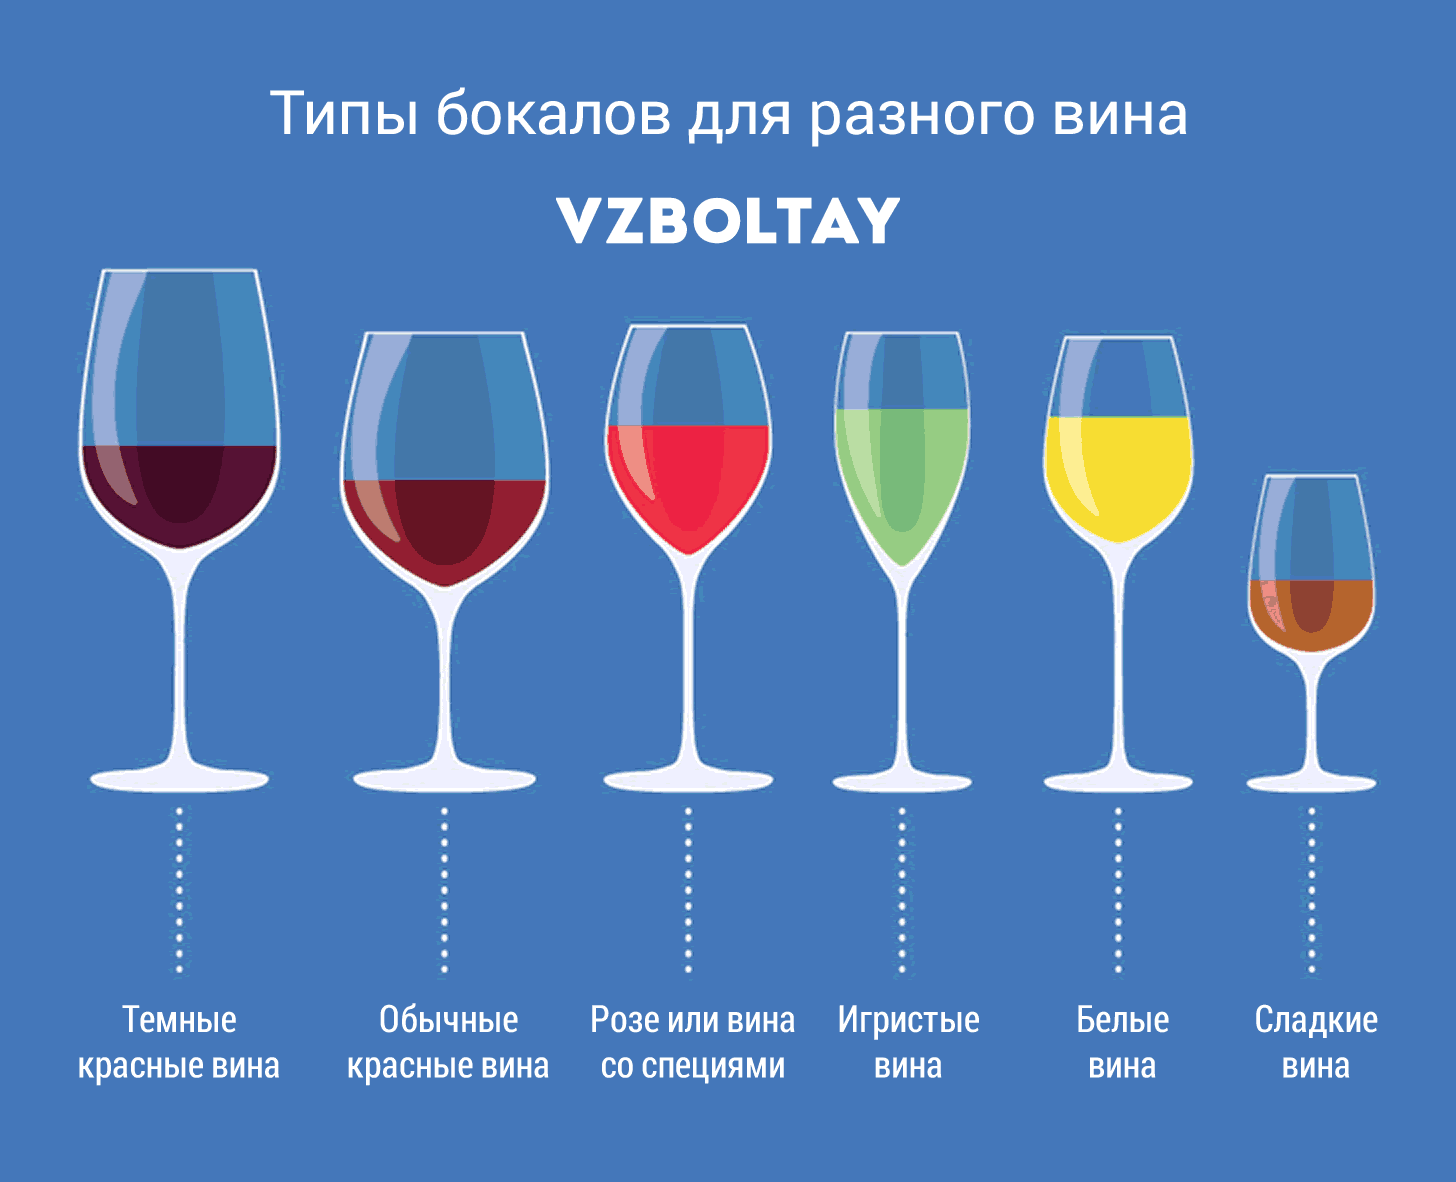 Сервировка вина - правила и особенности, сочетания